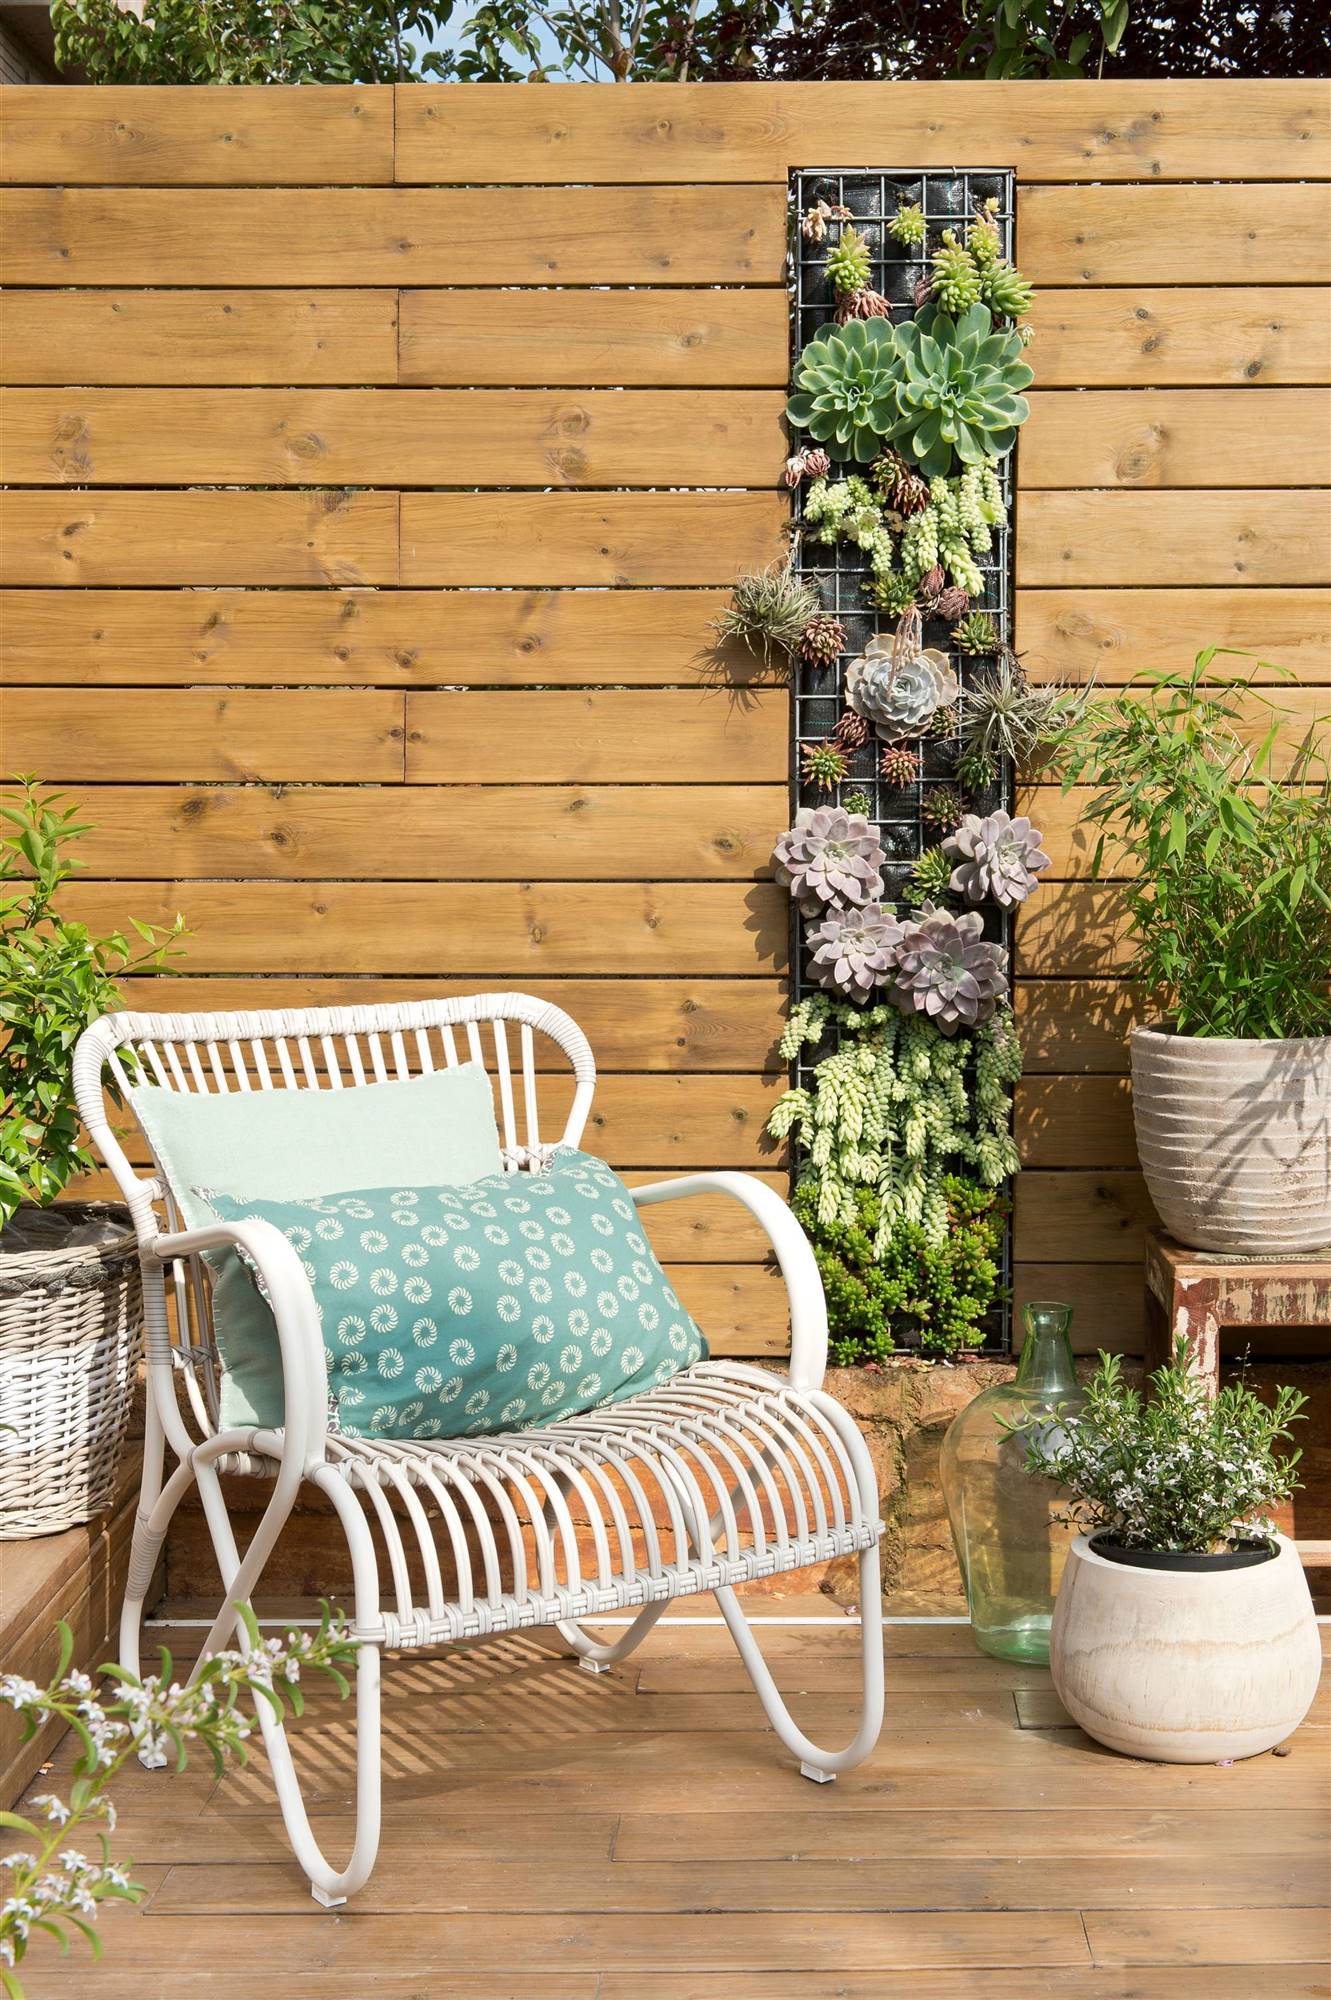 Terraza panelada de madera con jardín vertical 00406475